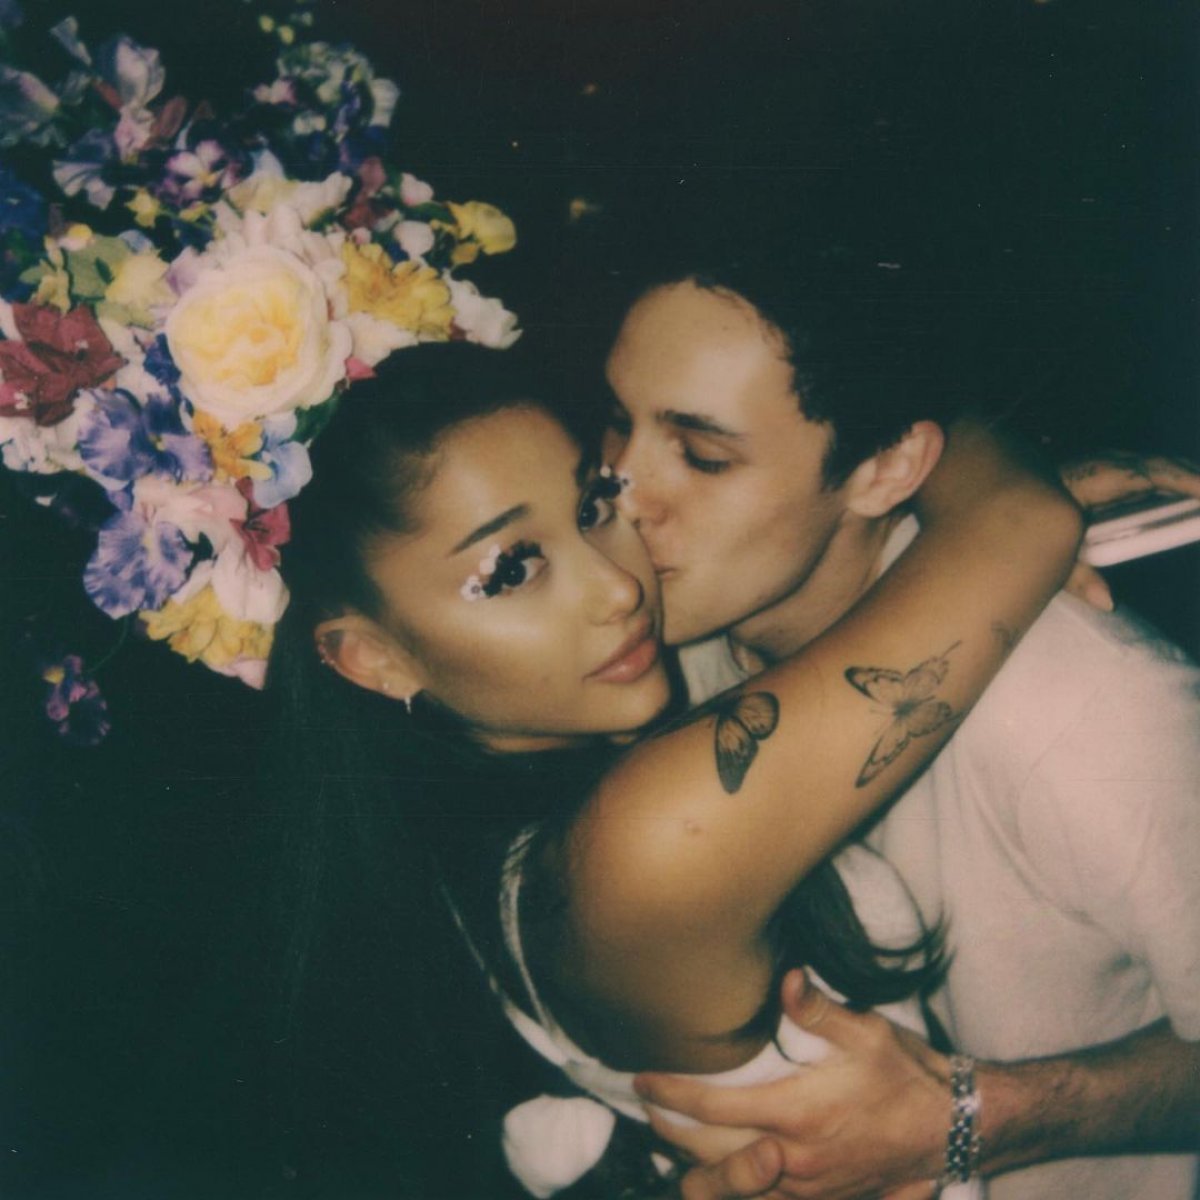 Ariana Grande secretly married #1